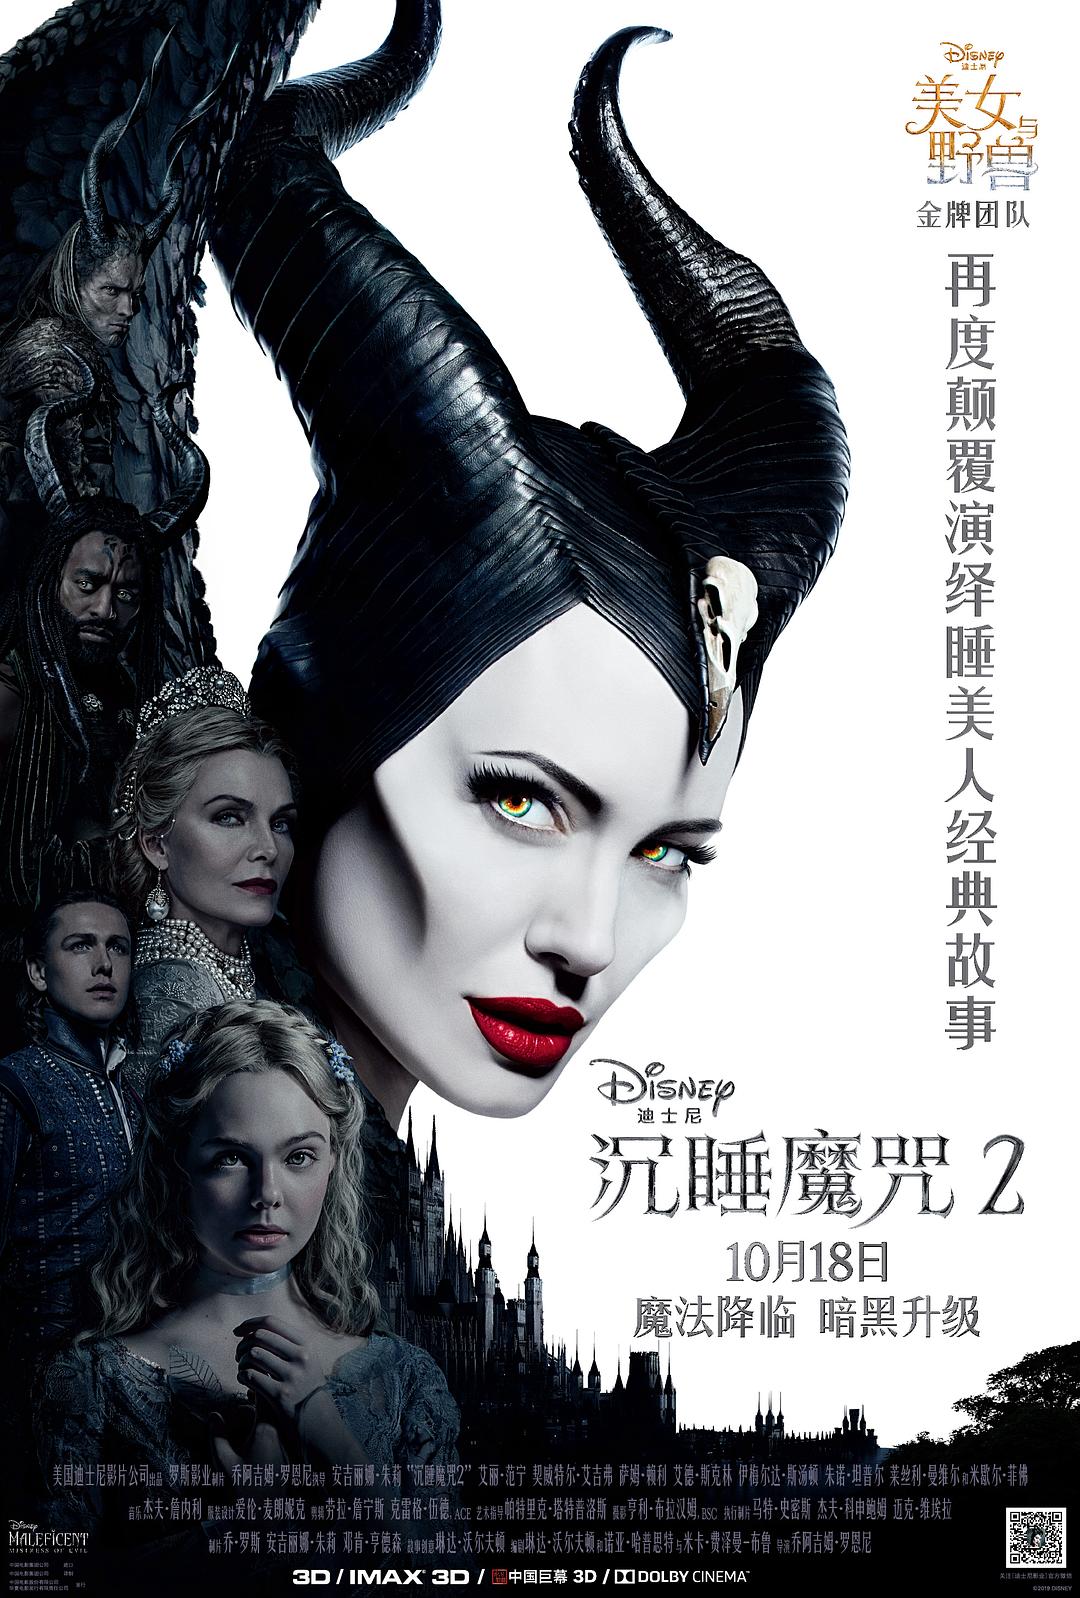 沉睡魔咒2 Maleficent.Mistress.of.Evil.2019.1080p.3D.BluRay.Half-OU.x264.TrueHD.7.1.Atmos-FGT 19.88GB-1.png